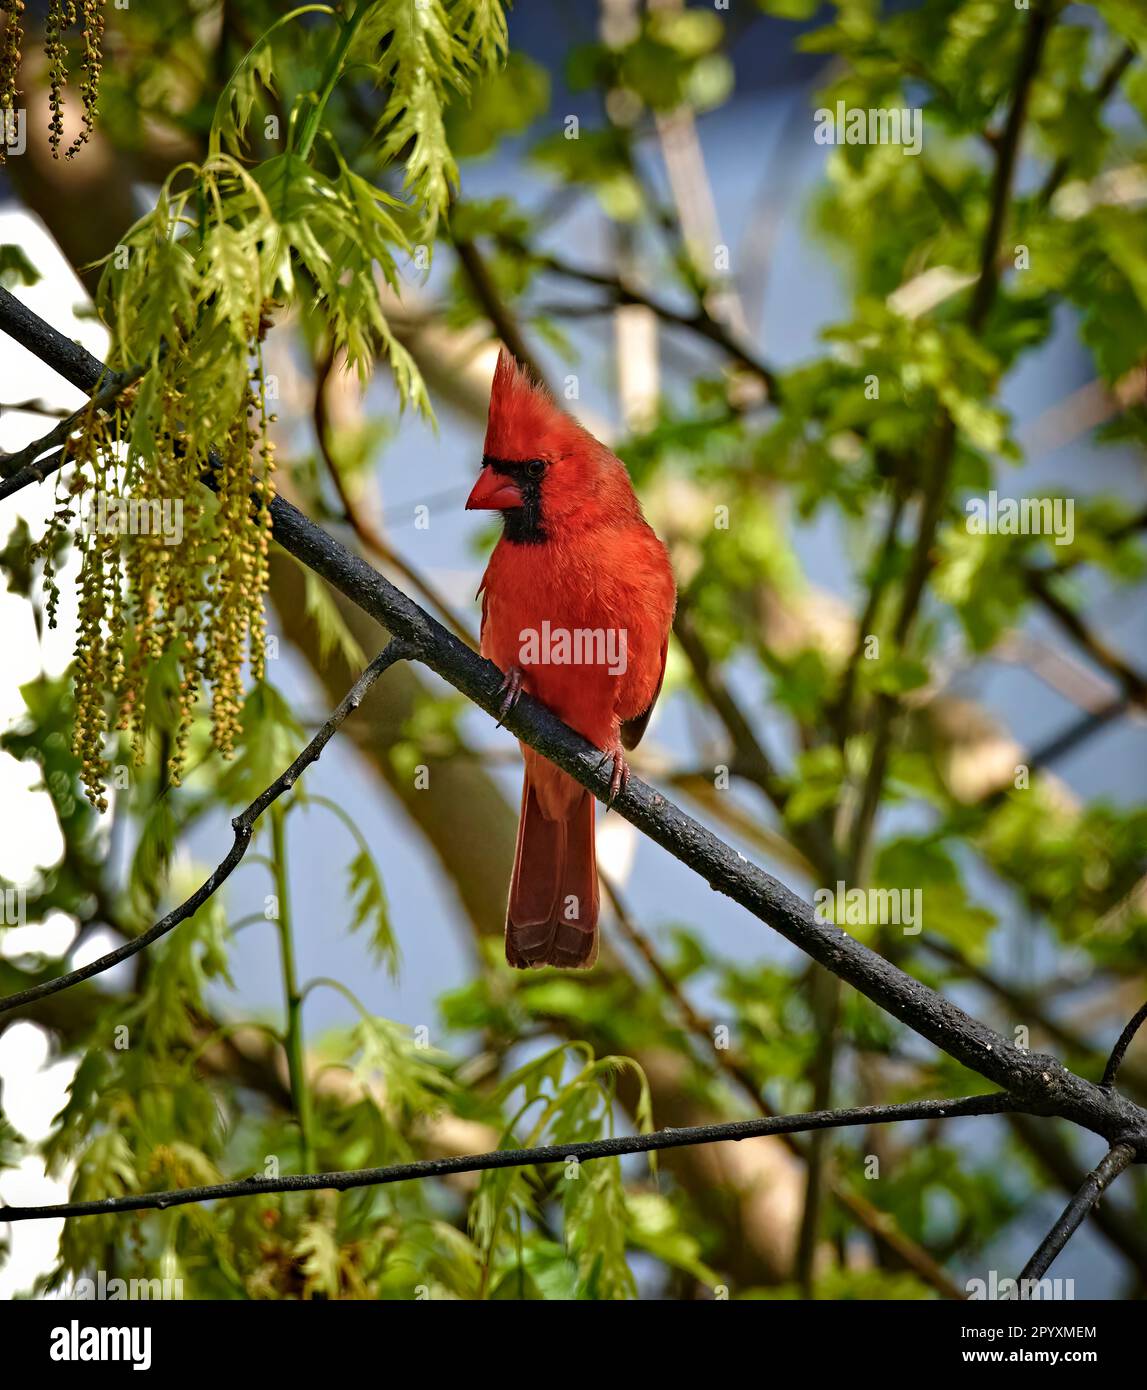 Un bellissimo uccello cardinale di colore rosso brillante. Su un ramo con qualche muschio appeso. Foto Stock